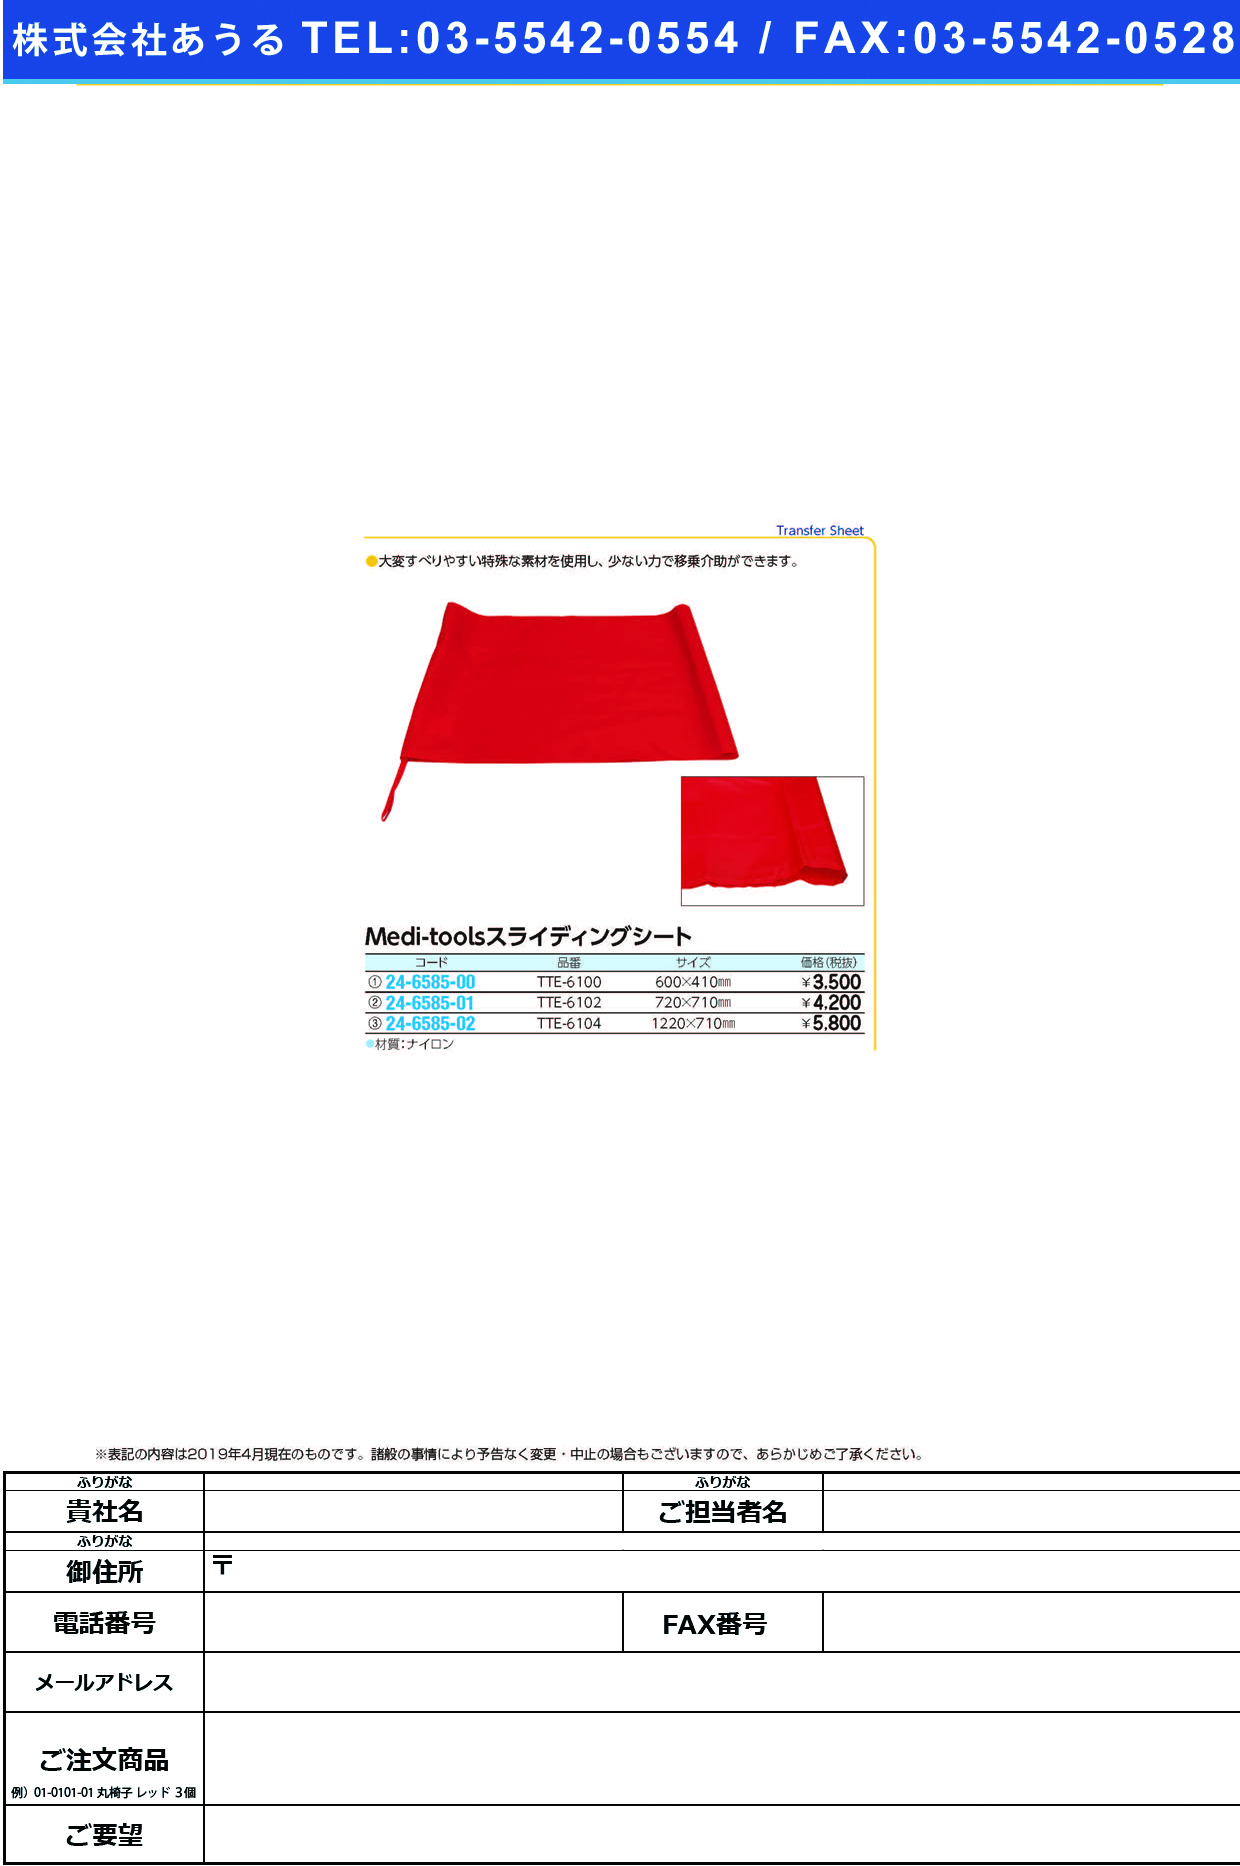 (24-6585-00)Ｍｅｄｉｔｏｏｌスライディングシート TTE-6100(600X410) ﾒﾃﾞｨﾂｰﾙｽﾗｲﾃﾞｨﾝｸﾞｼｰﾄ(日本エンゼル)【1枚単位】【2019年カタログ商品】